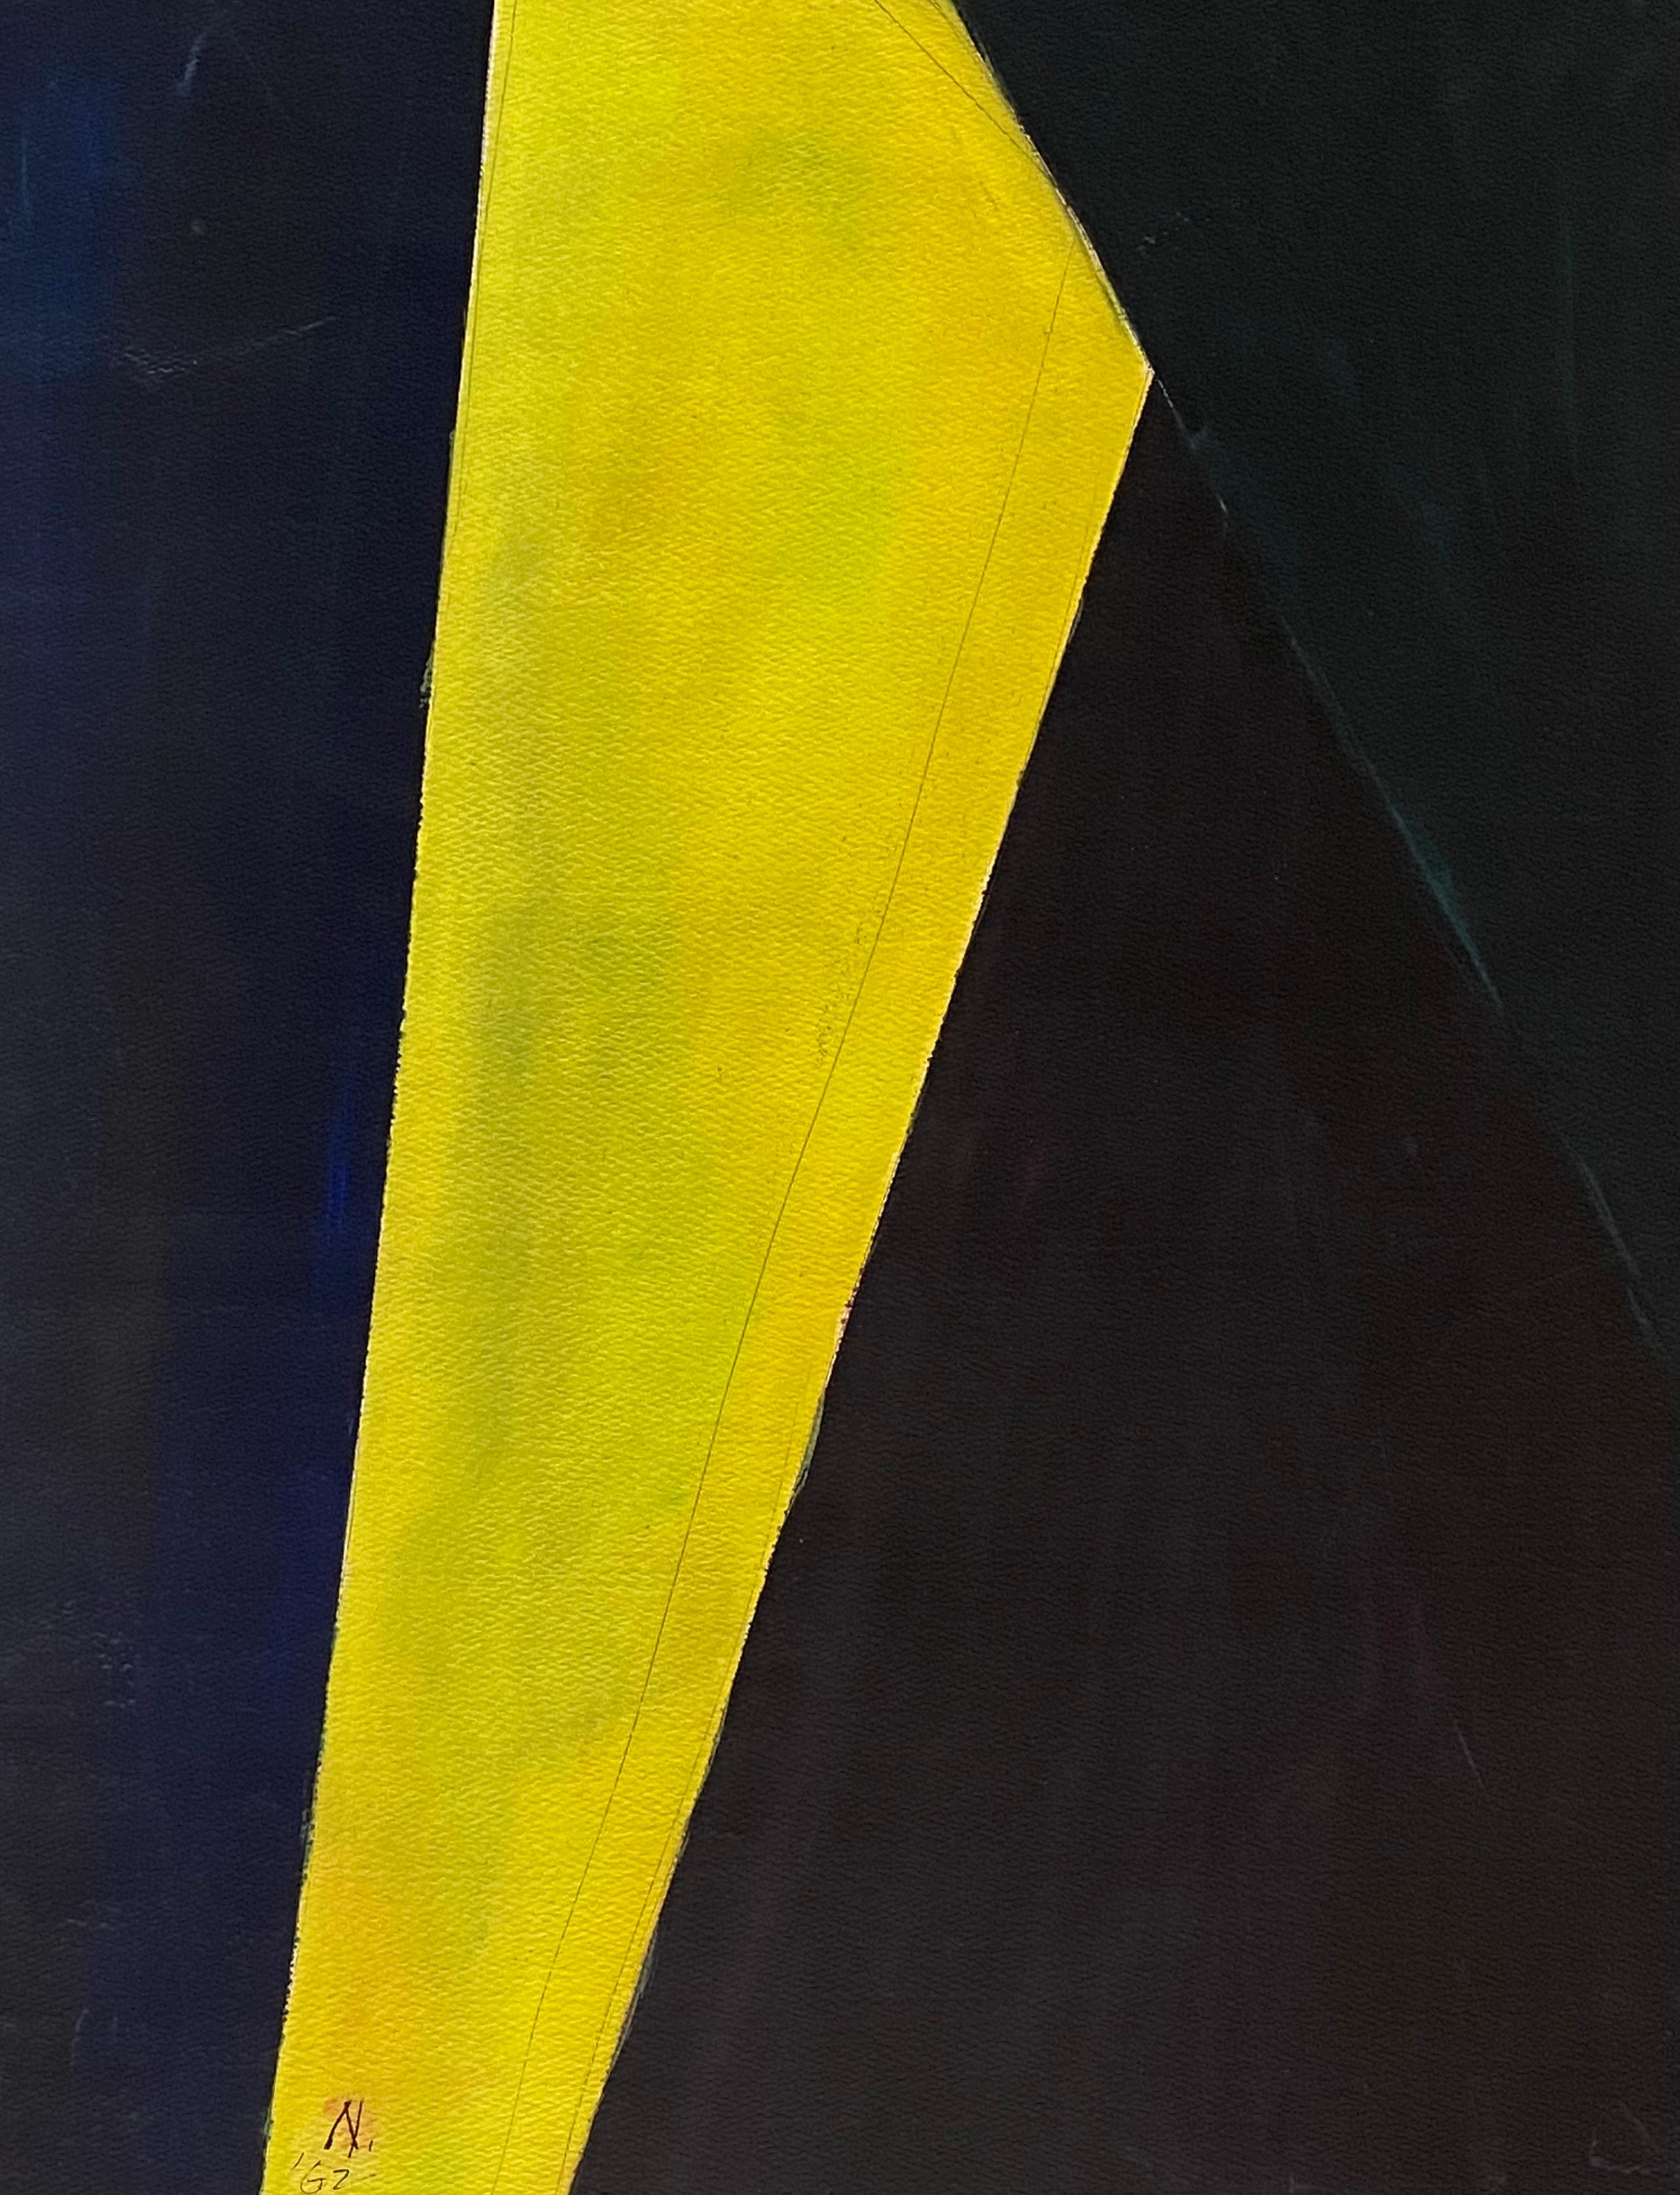 Abstrakt in Schwarz und Gelb (Postmoderne), Art, von Lloyd Raymond Ney